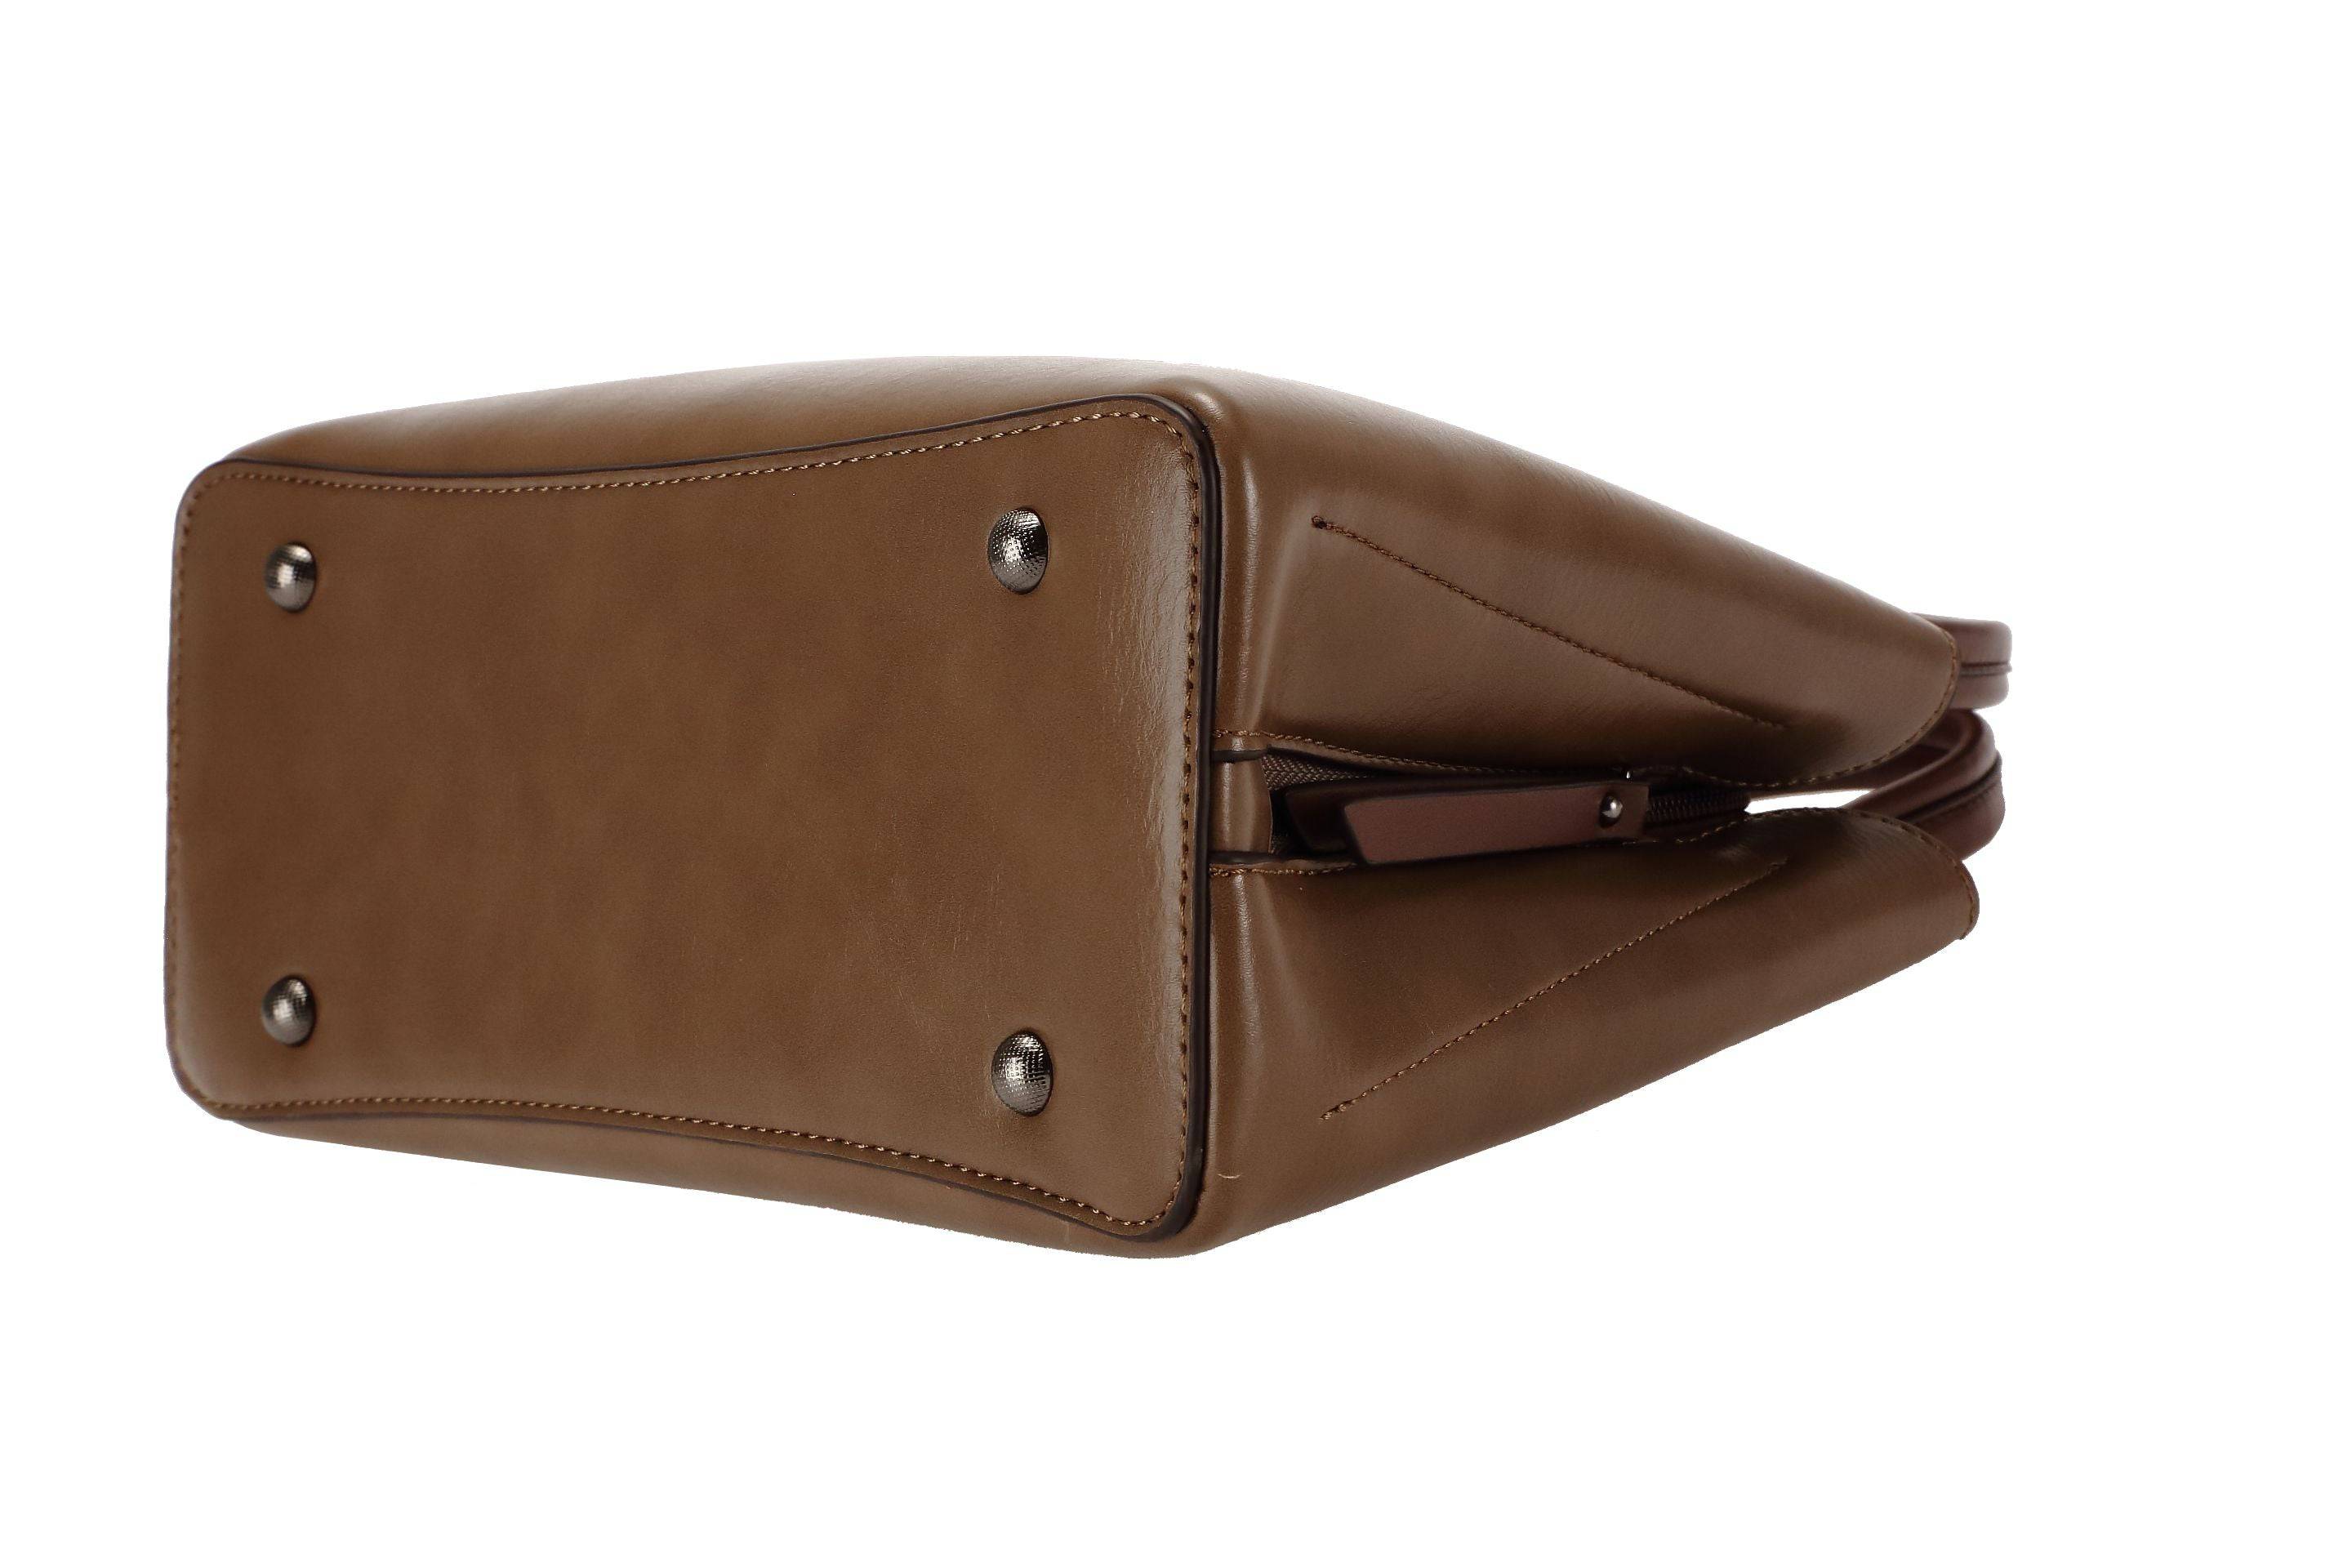 حقيبة يد نسائية باللون الاسود مربعة الشكل كبيرة الحجم بيد وحزام طويل لحملها على الكتف - KSA